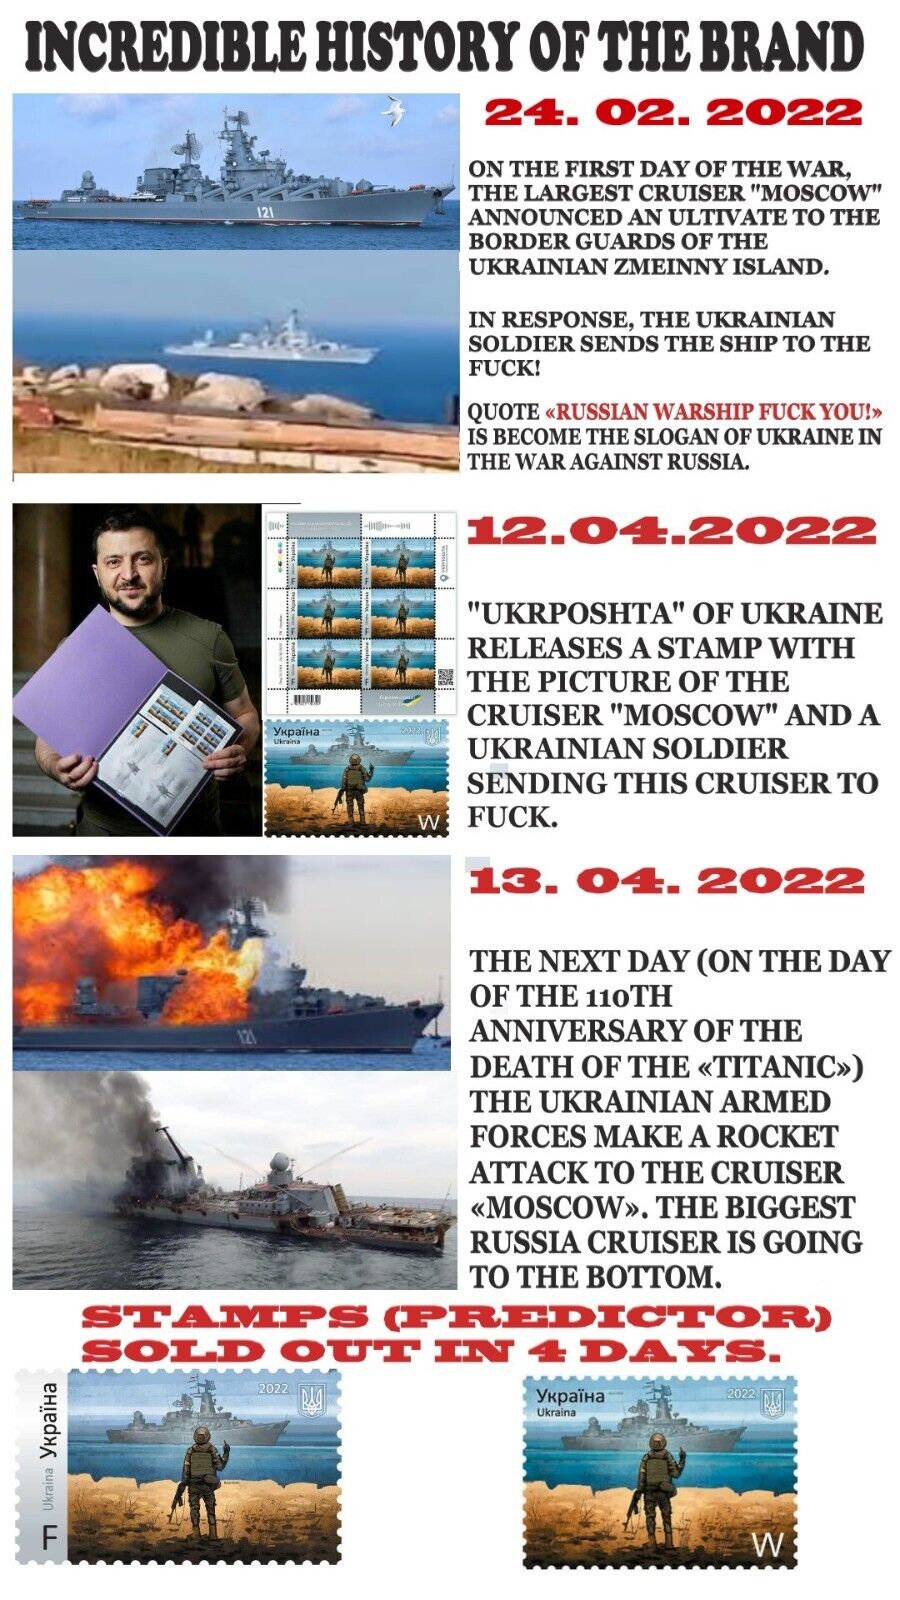 ORIGINAL. WAR IN UKRAINE. Postage Stamp "Russian warship go to ...!" 14.04.2022 Без бренда - фотография #8